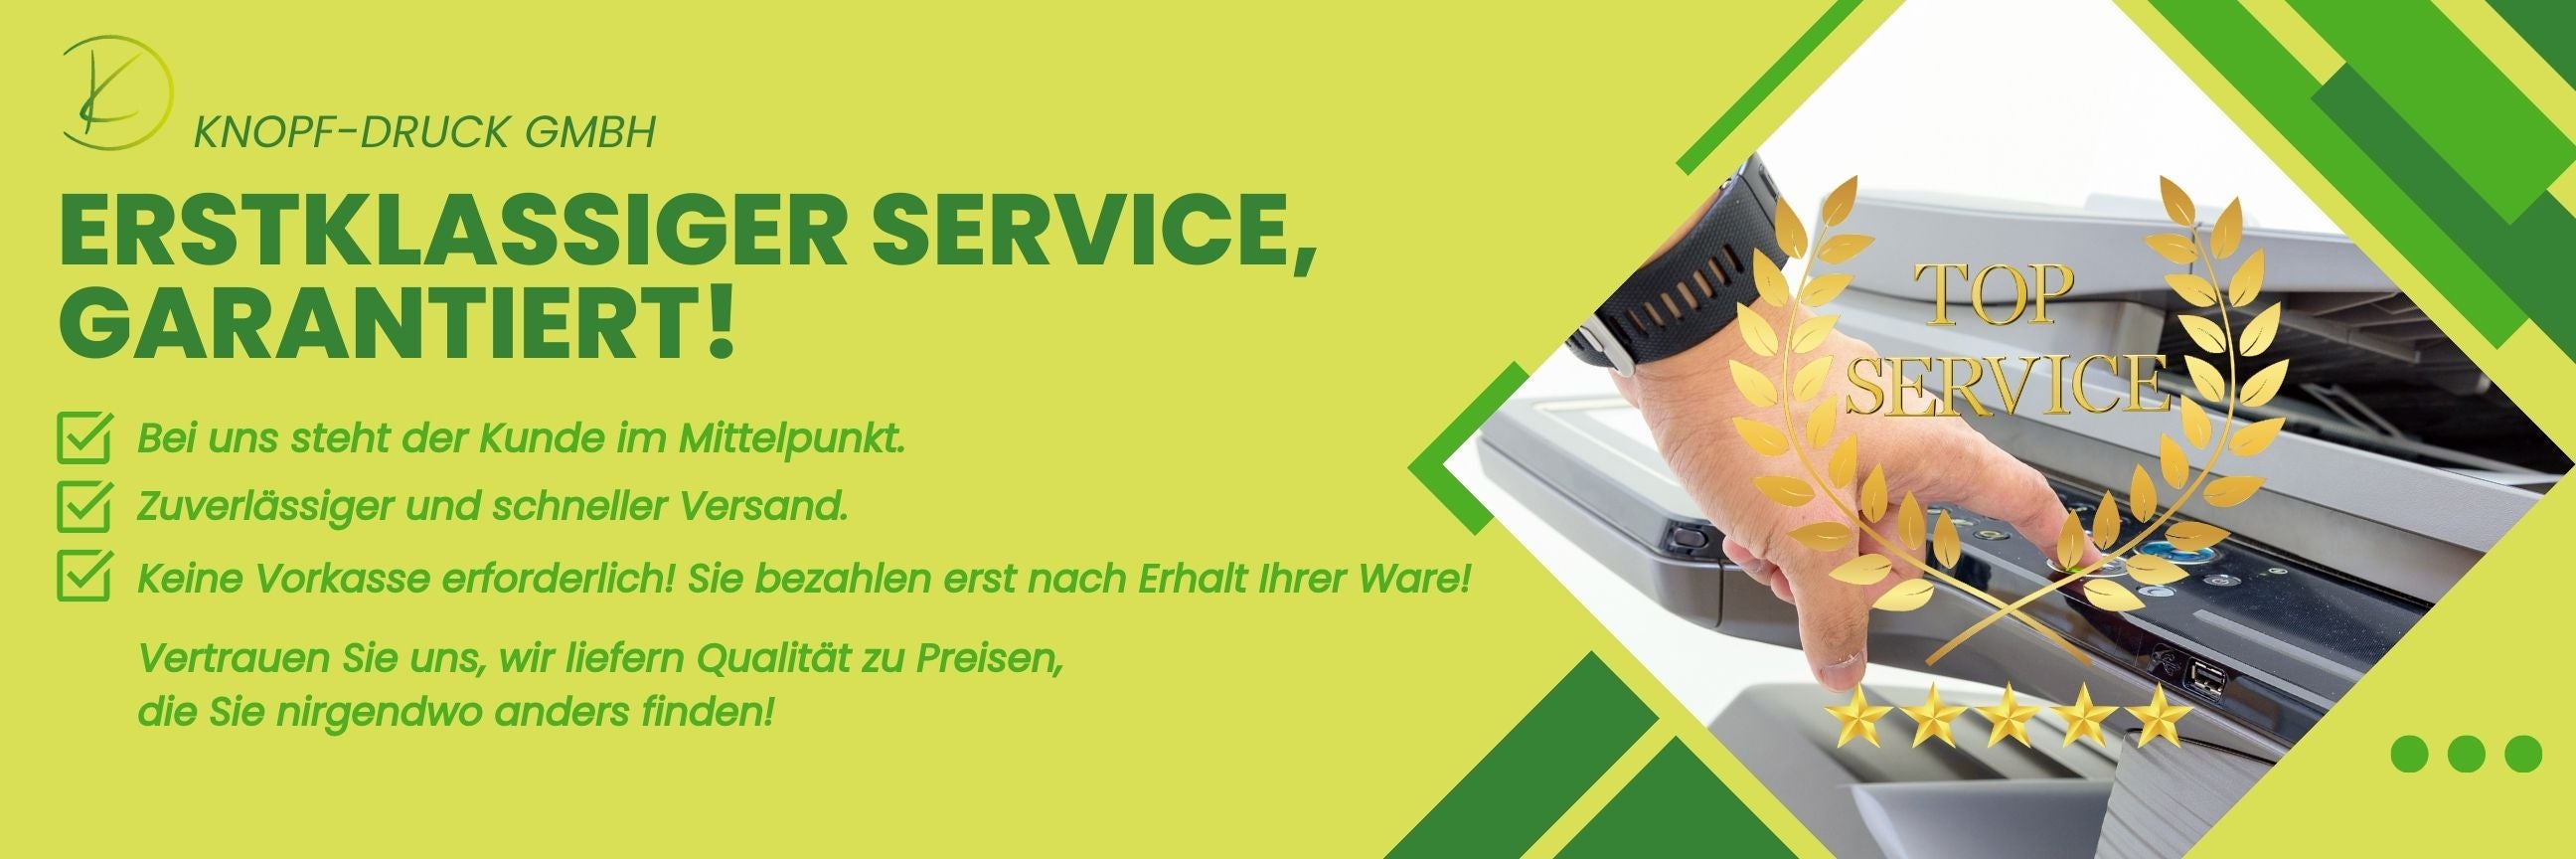 Banner von KNOFP DRUCK GMBH, der erstklassigen Service und Kundenzufriedenheit betont. Text hebt schnellen Versand und Qualität hervor.